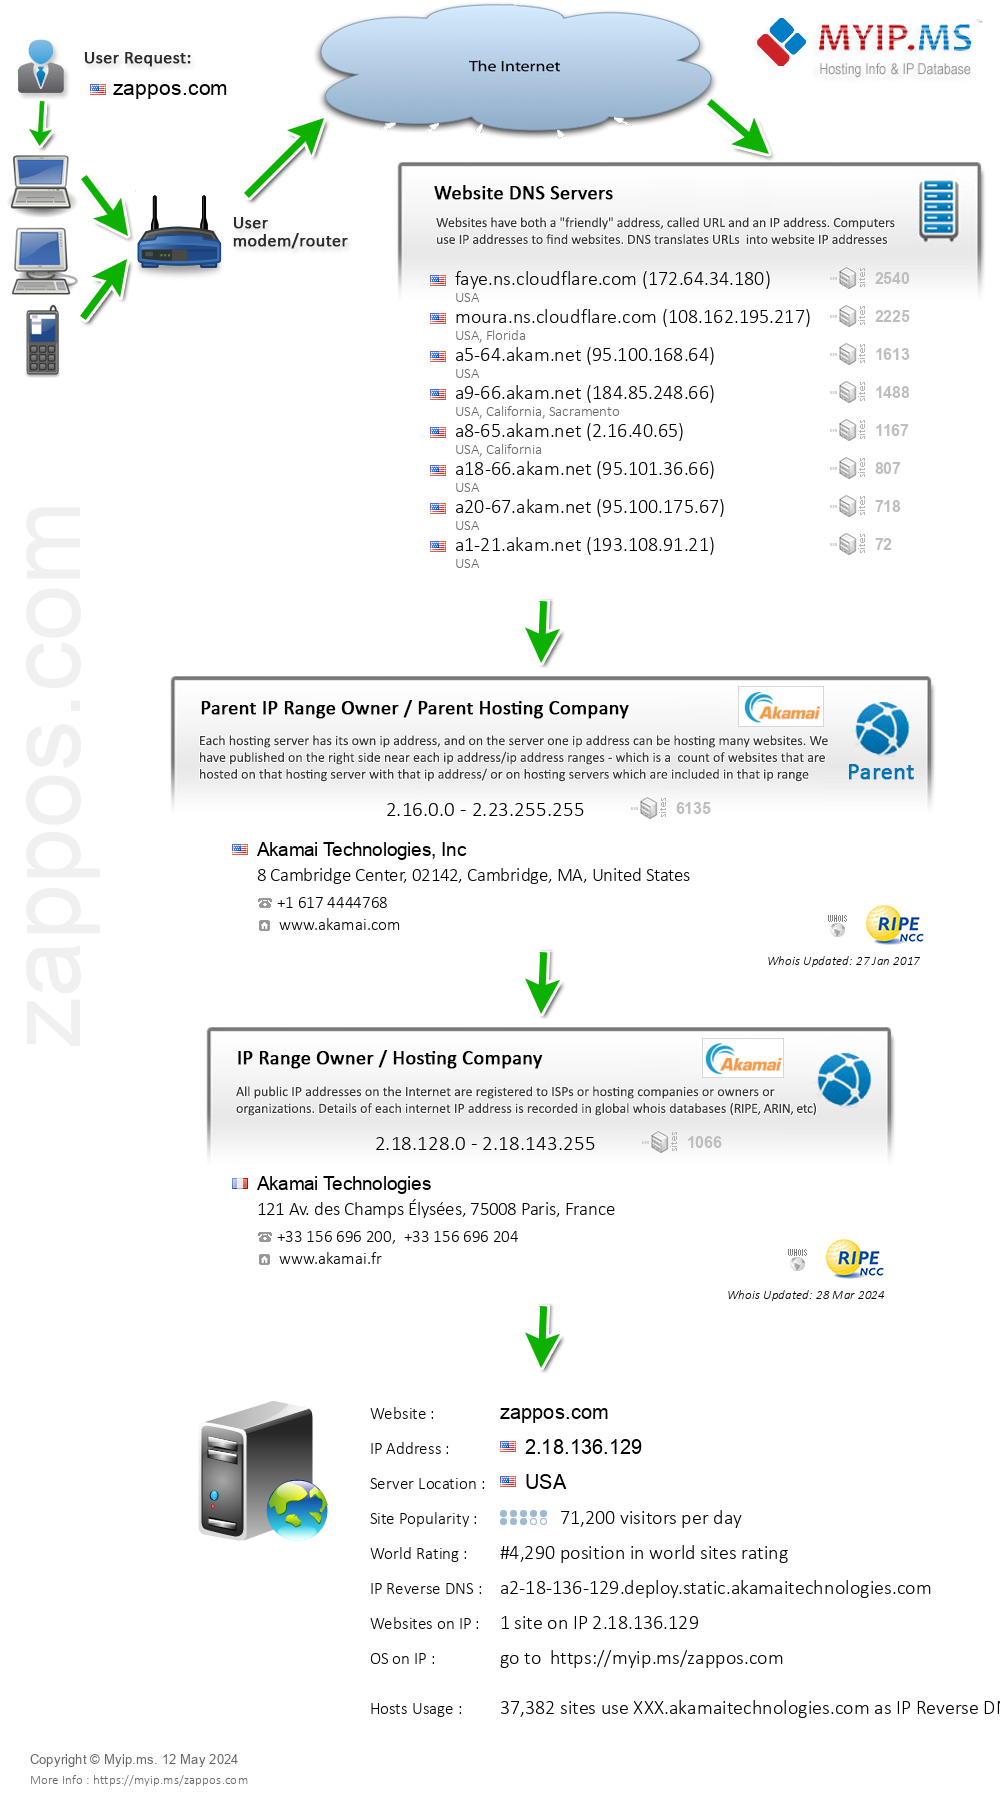 Zappos.com - Website Hosting Visual IP Diagram